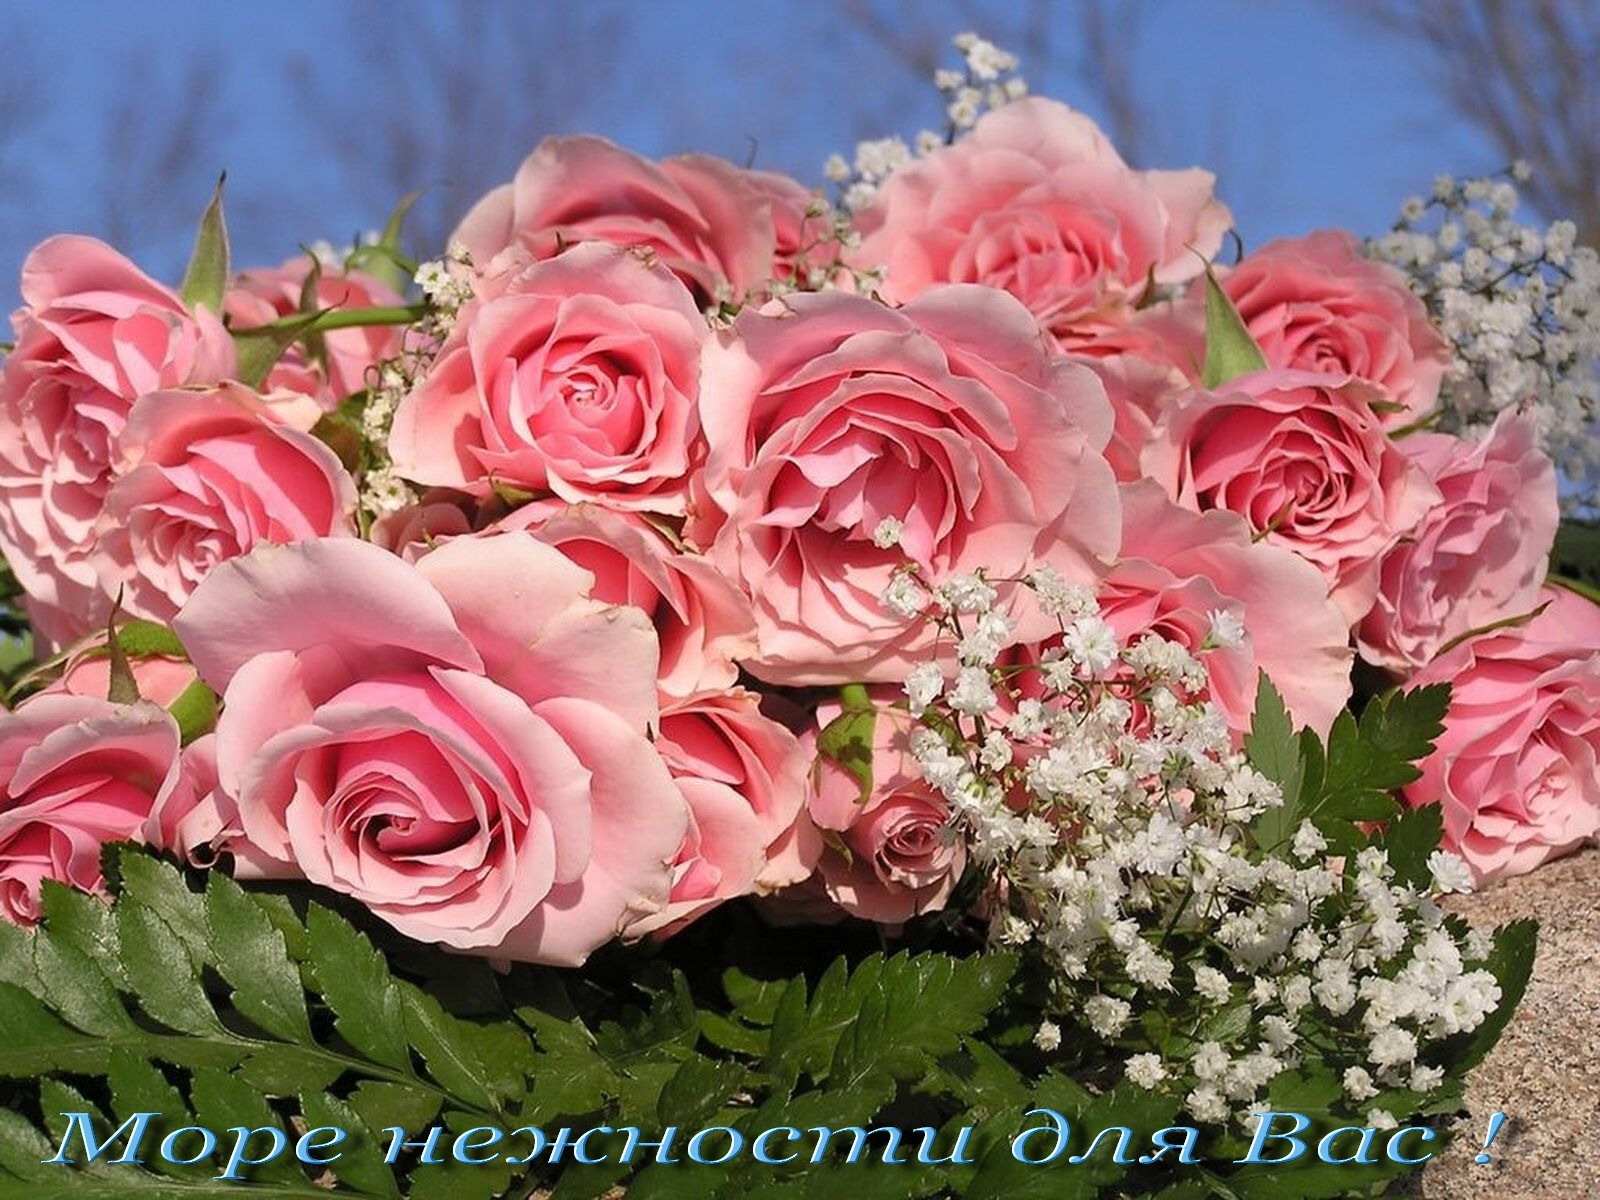 Скачать обои бесплатно Праздники, Растения, Розы, Цветы картинка на рабочий стол ПК